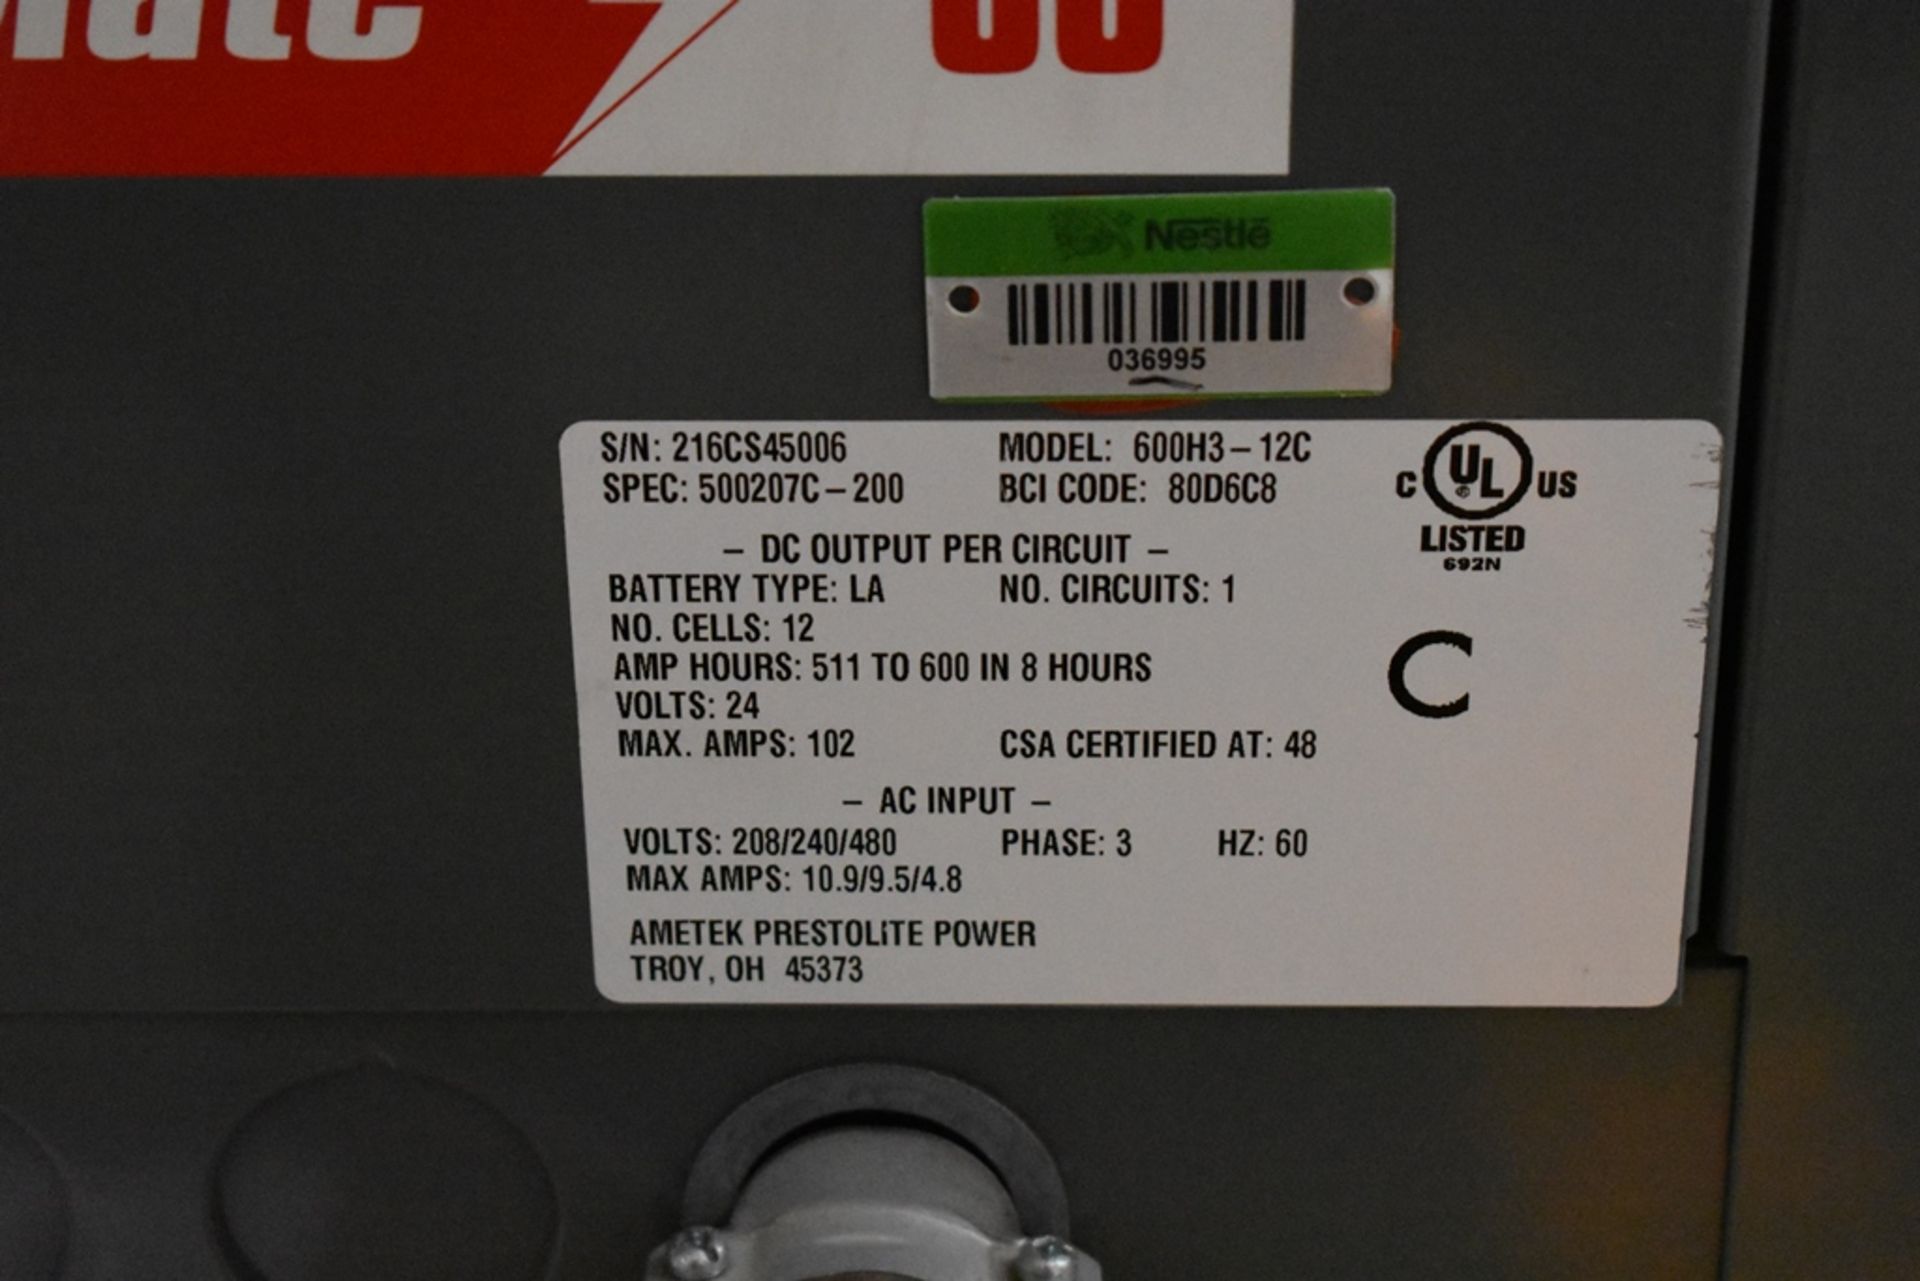 Ametek Prestolite Power Forklift Battery Charger, Model Mate-80 and Battery Brand Deka for 24 volts - Image 11 of 20